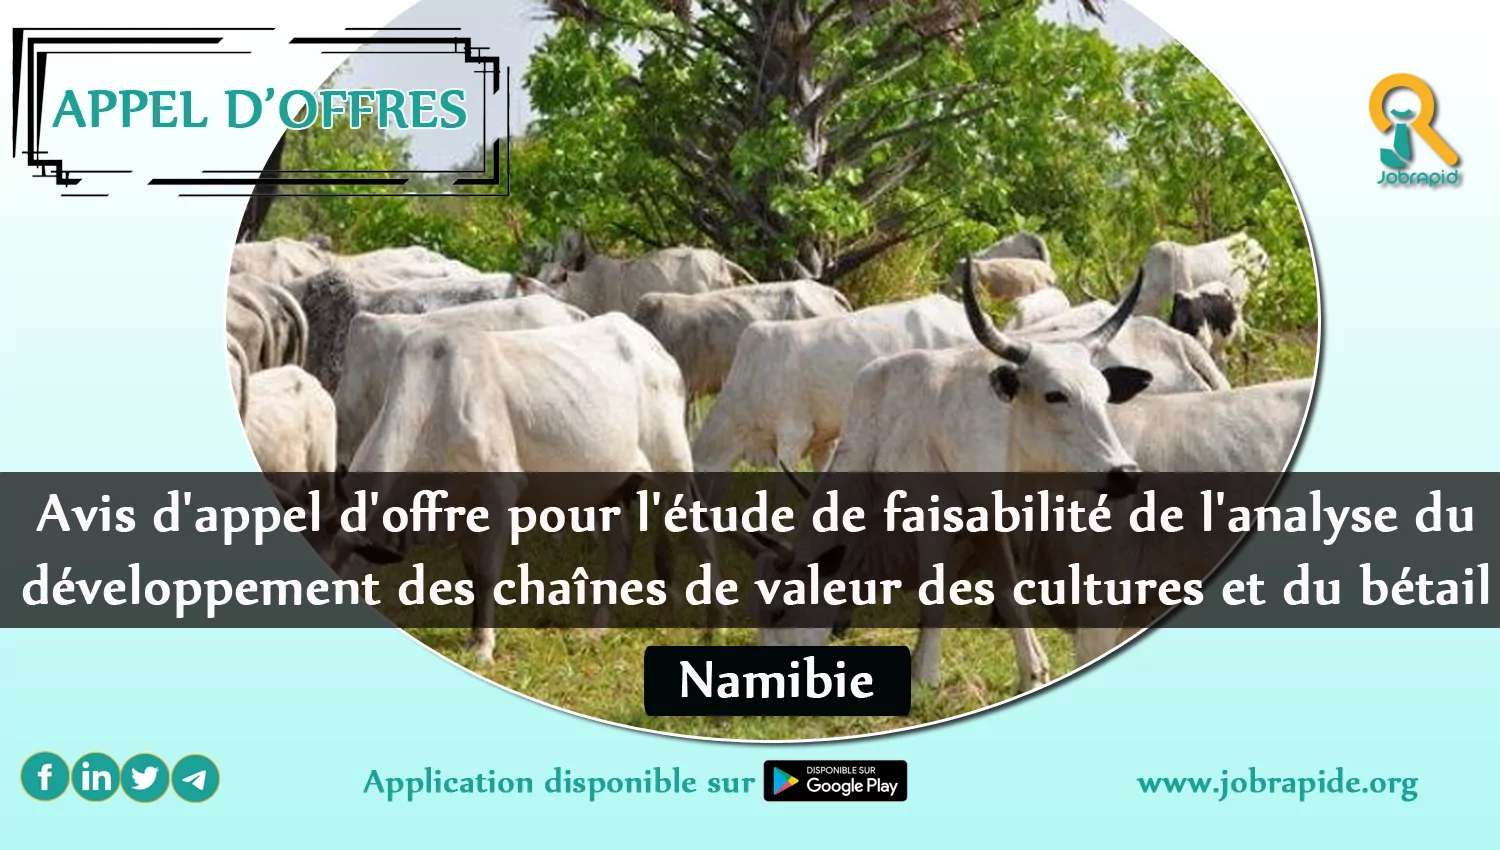 Avis d’appel d’offre pour l’étude de faisabilité de l’analyse du développement des chaînes de valeur des cultures et du bétail, Namibie